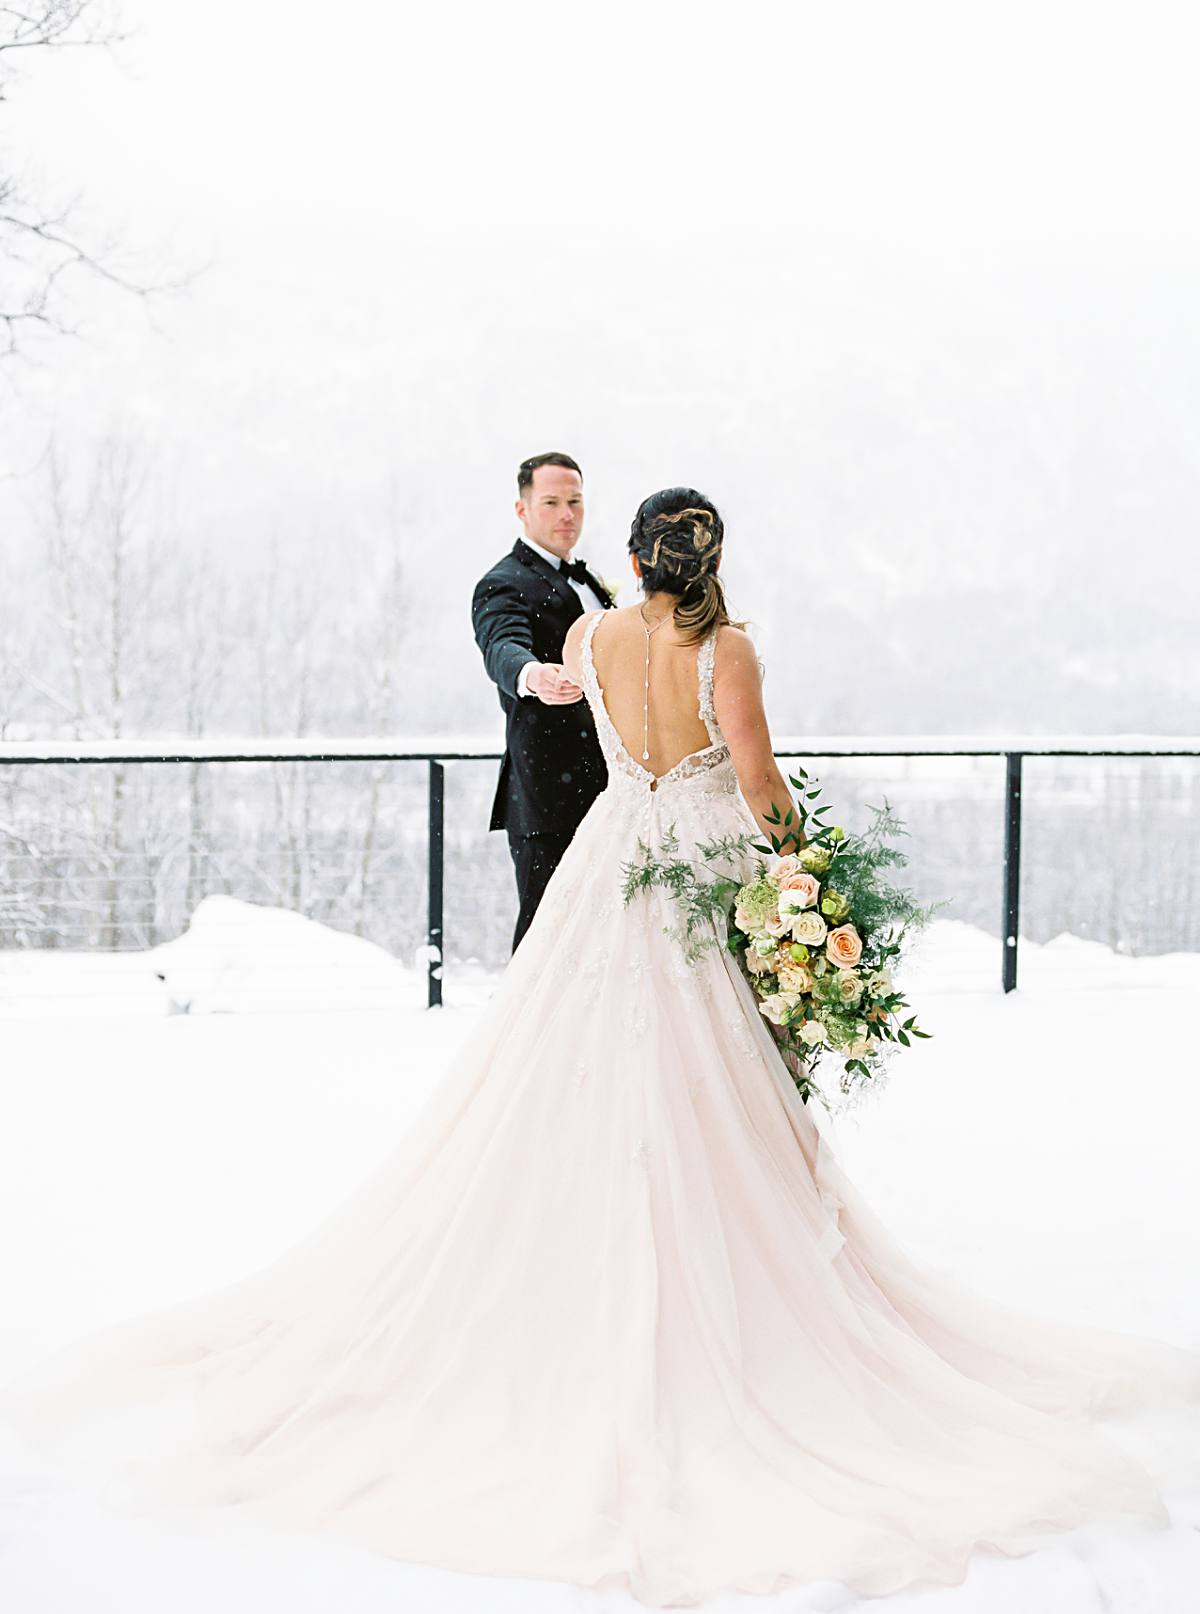 Couples Elegant Winter Wedding